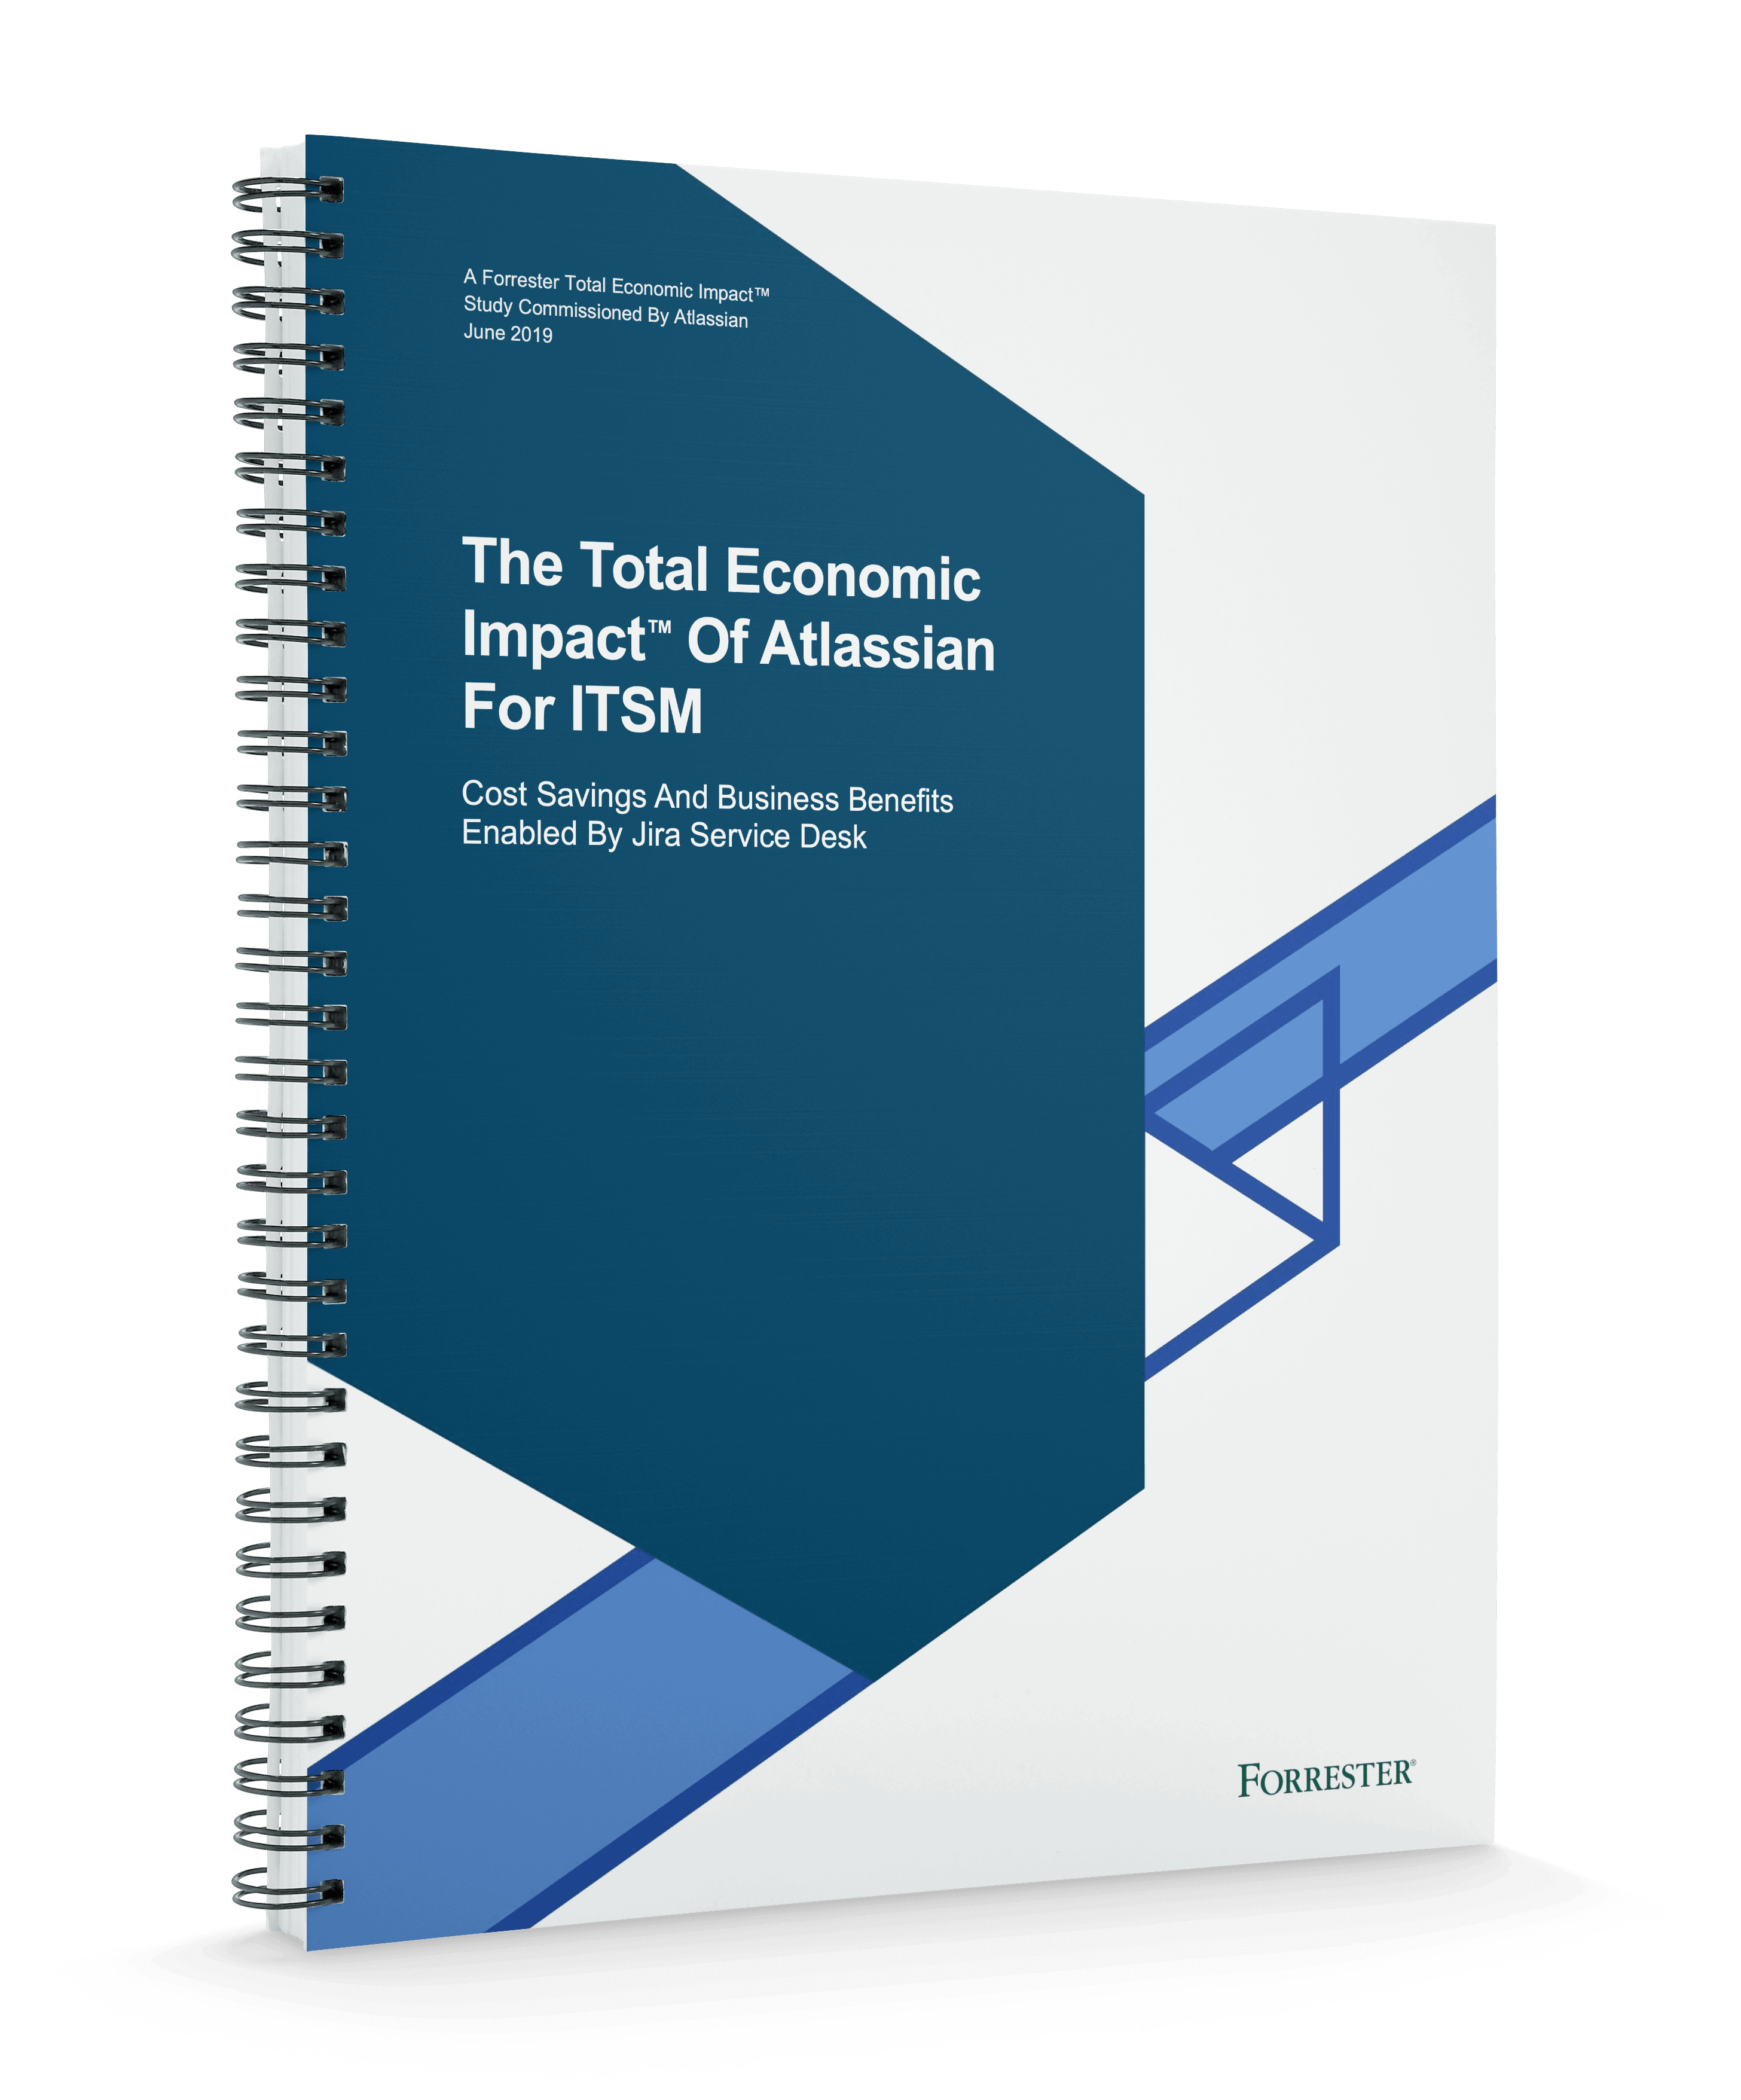 Boekomslag van Forrester's Total Economic Impact™ van Atlassian voor ITSM